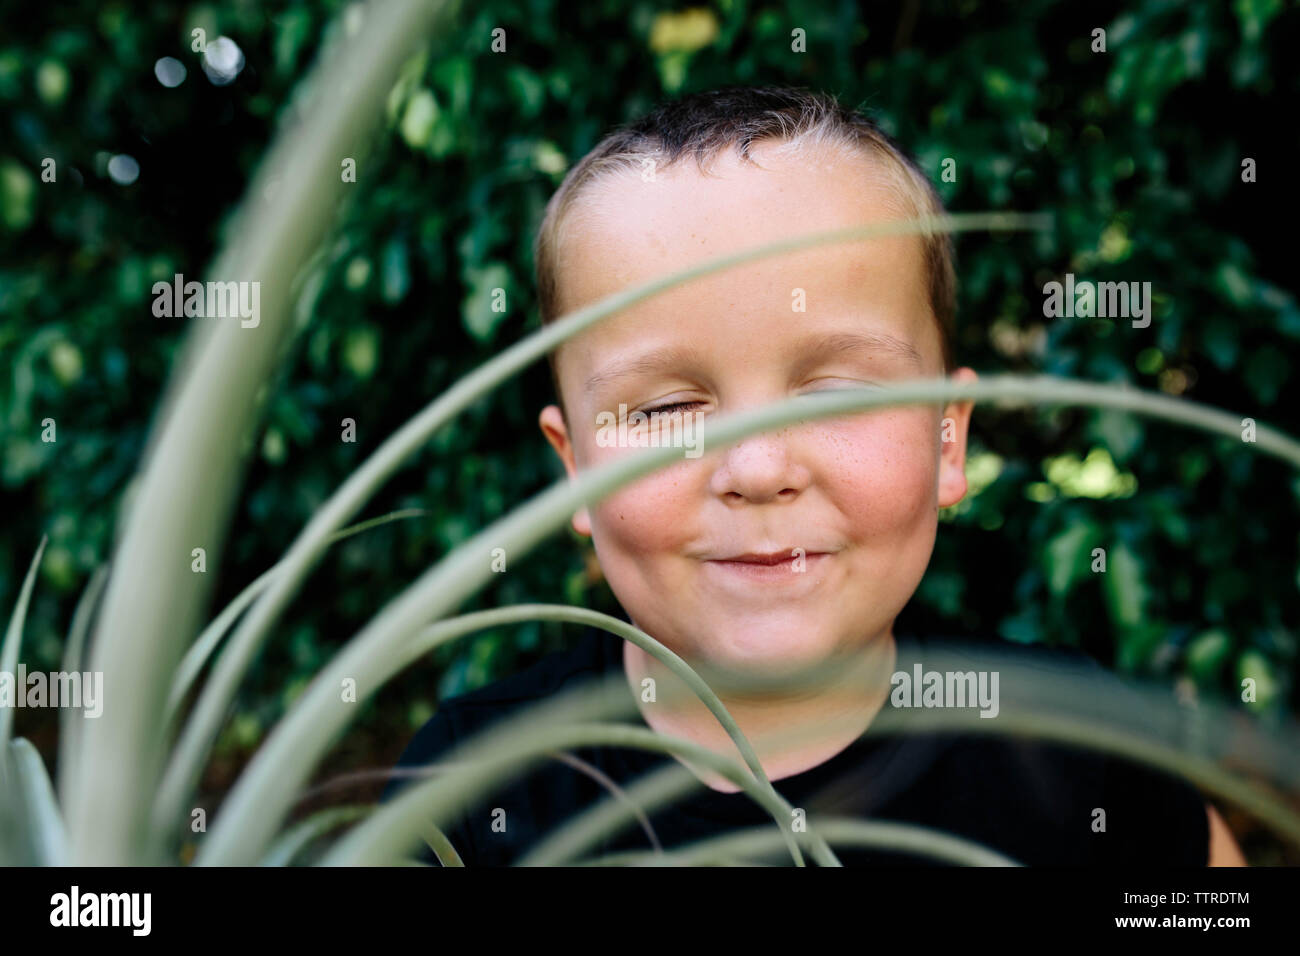 Close-up of cute boy avec les yeux fermés dans une cour de séance Banque D'Images